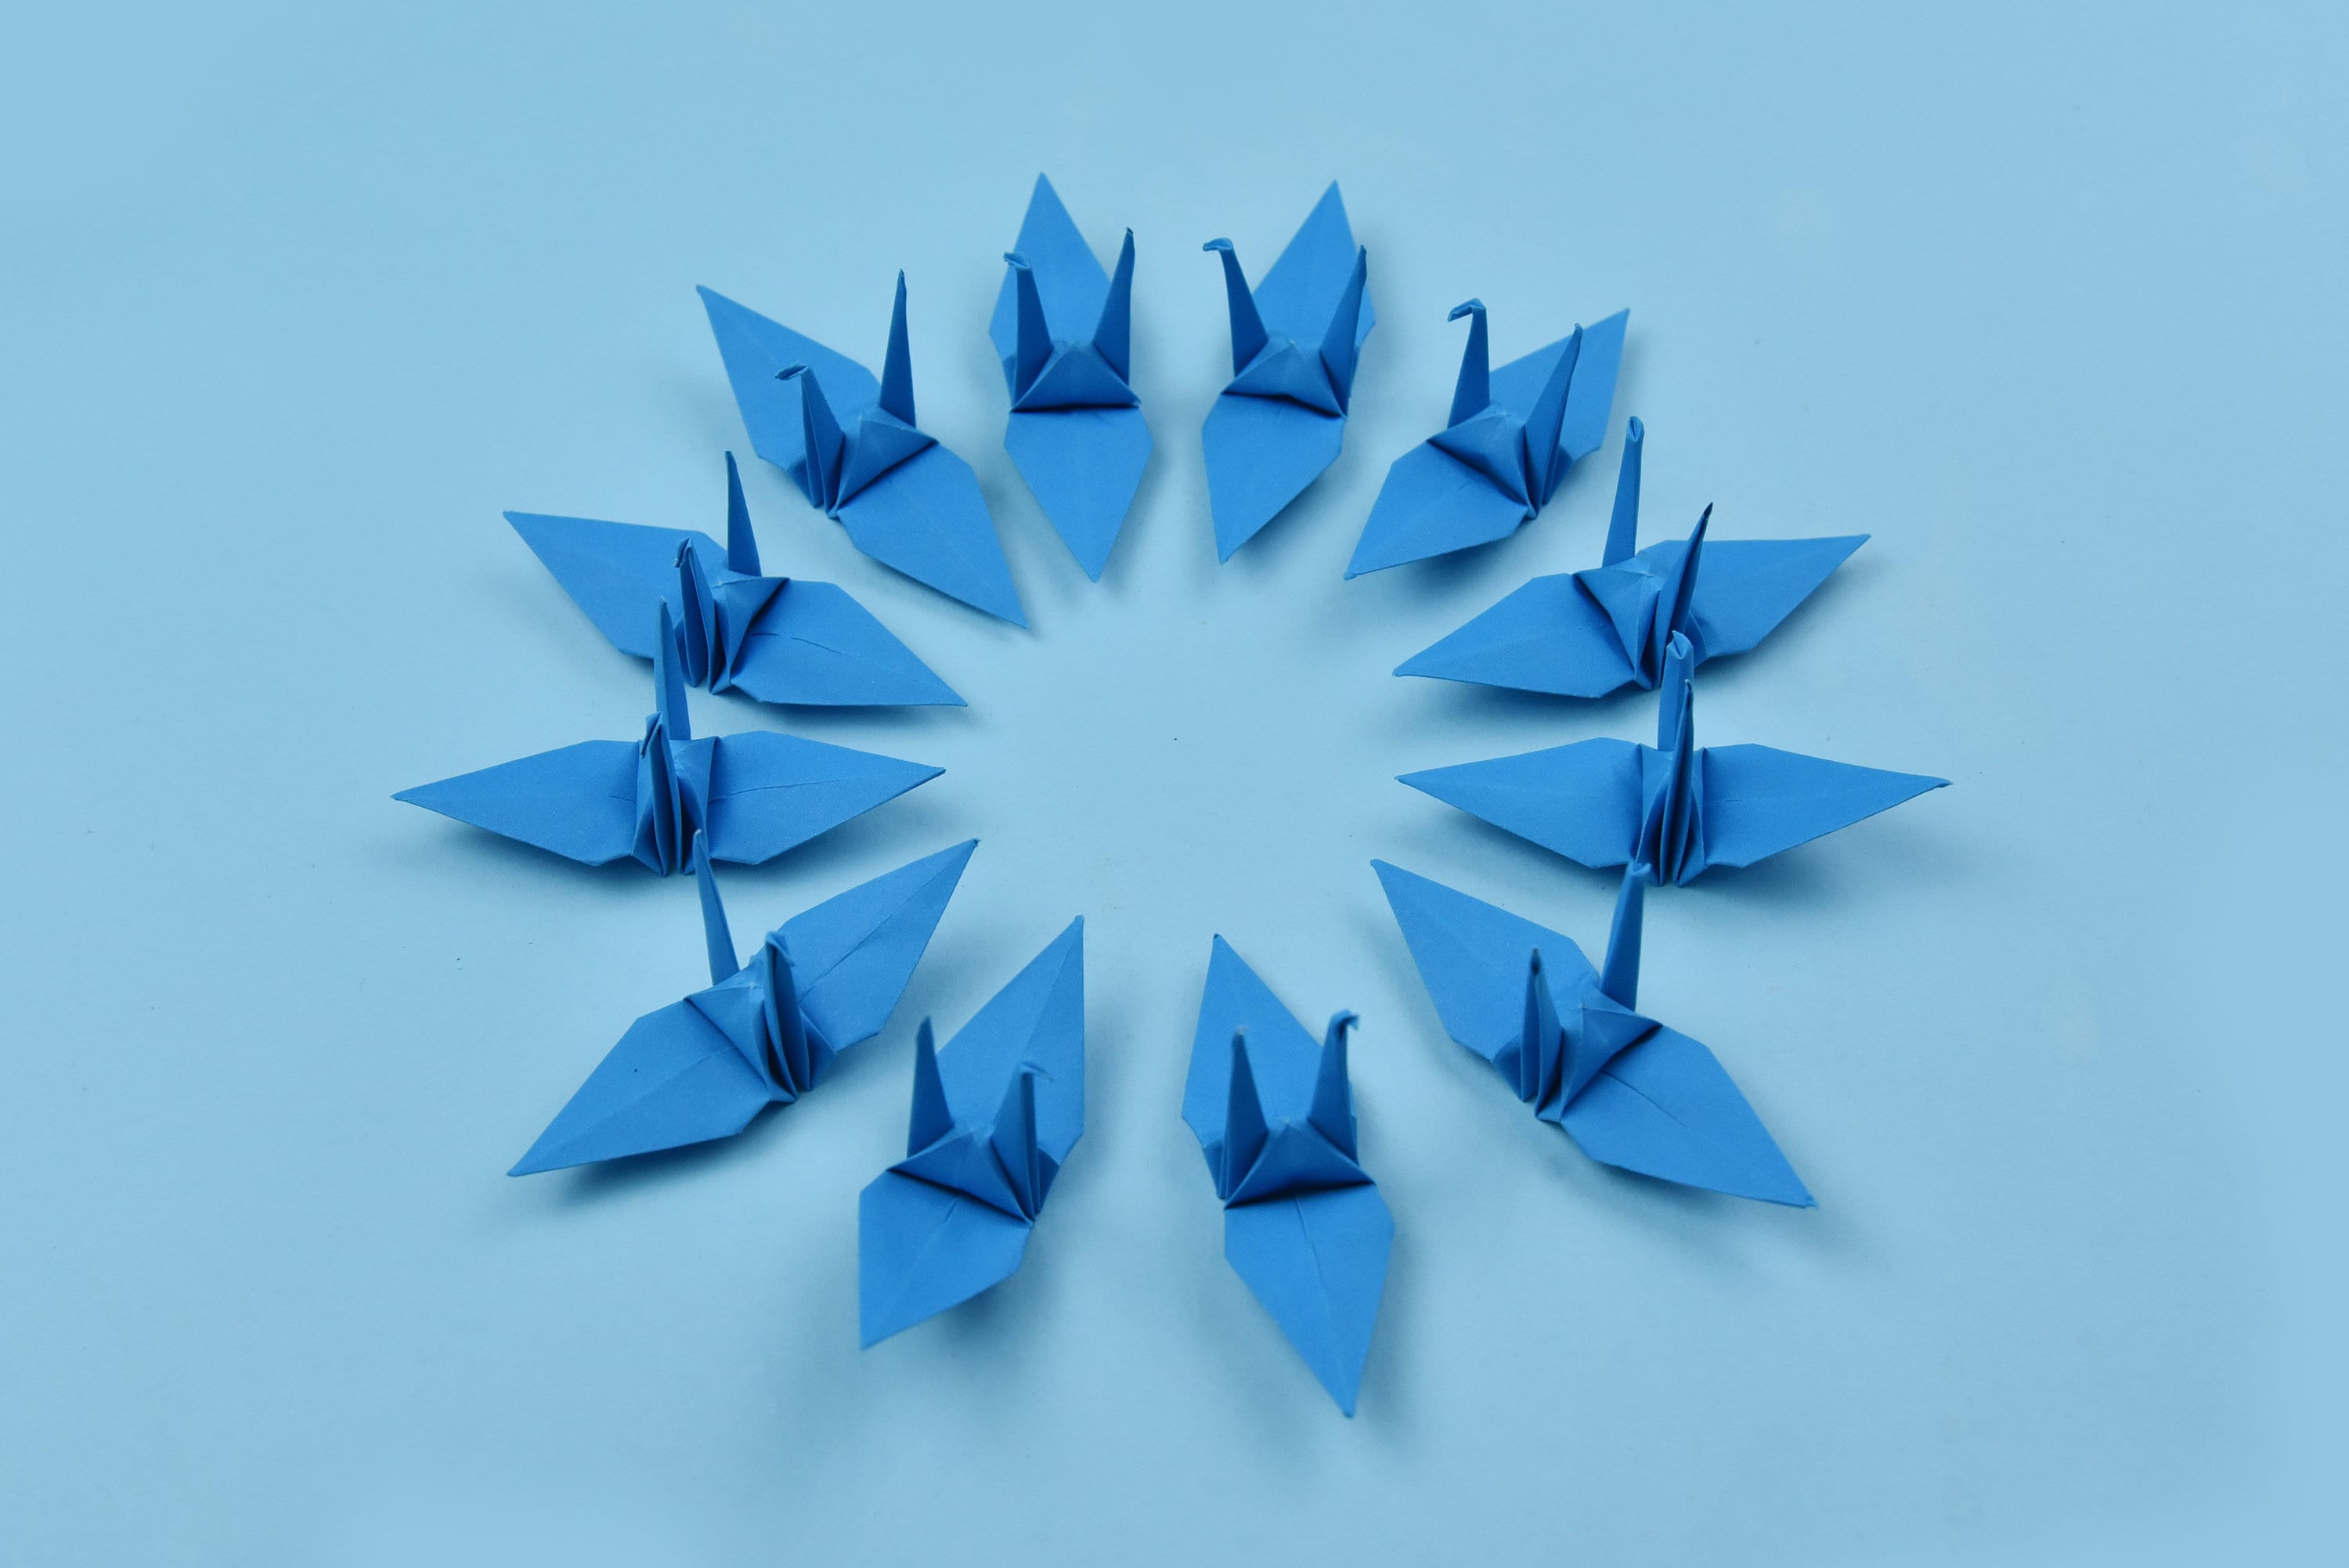 1000 gru di carta origami - blu scuro - 7,5 cm (3 pollici) - per decorazioni, ornamenti, regali di nozze, Natale